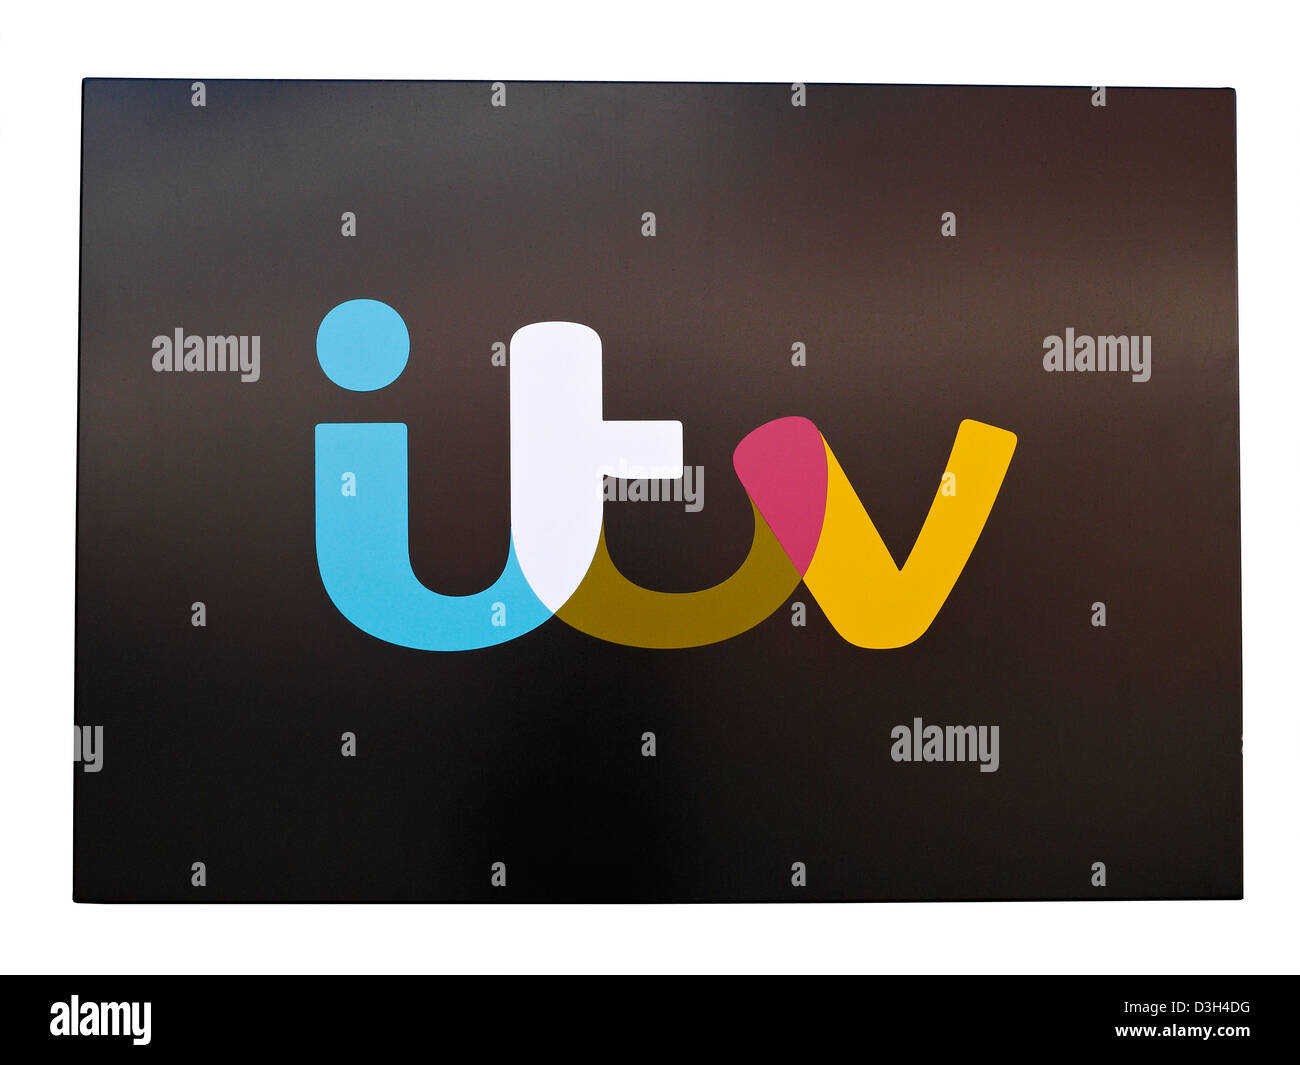 Coupé de la nouvelle, en 2013, ITV logo au Granada Studios à Manchester, UK Banque D'Images